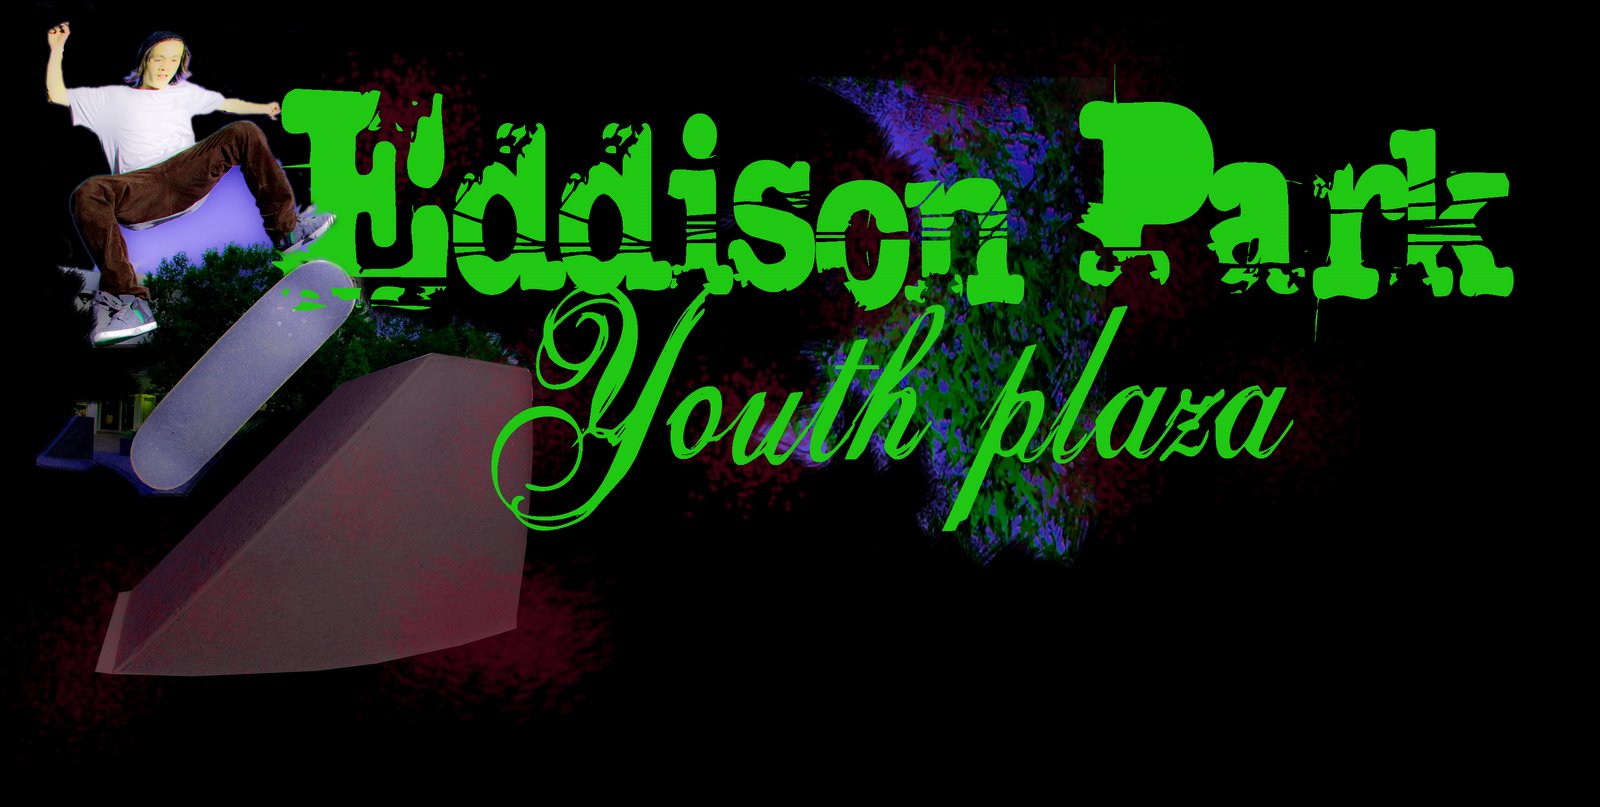 Eddison Park Youth Plaza